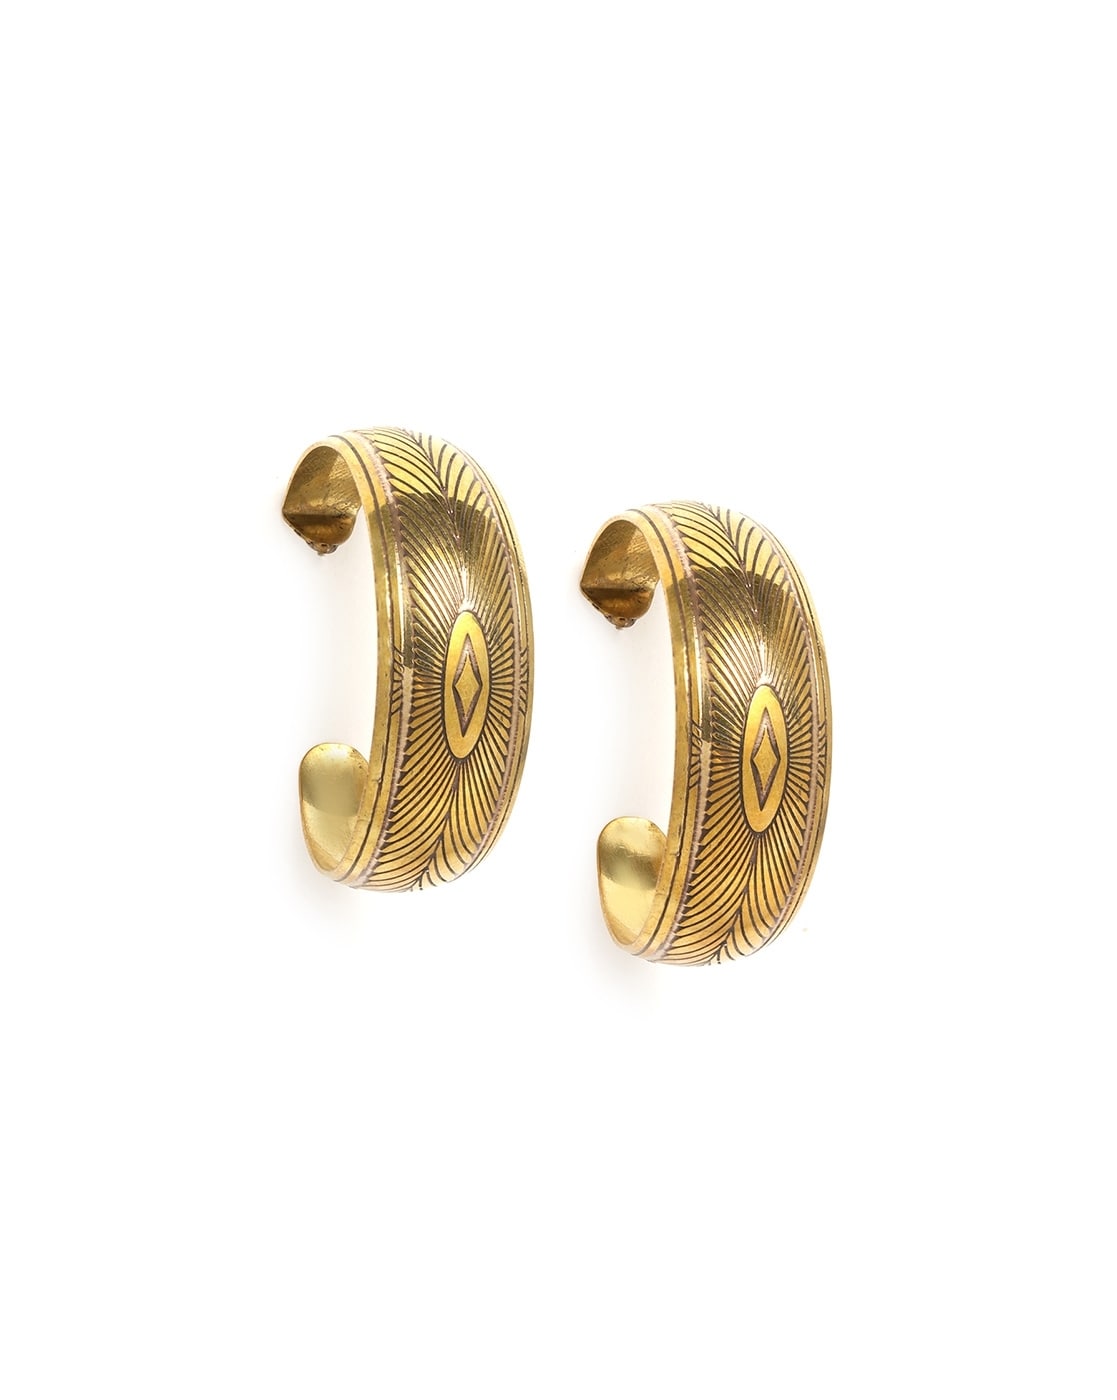 Buy Gold Hoop Earrings, Hoop Stud Earrings, Half Hoop Earrings, 14K Yellow Gold  Hoop Earrings, Leaves Hoop Earrings, Gold Hoops, Gold Stud Hoops Online in  India - Etsy